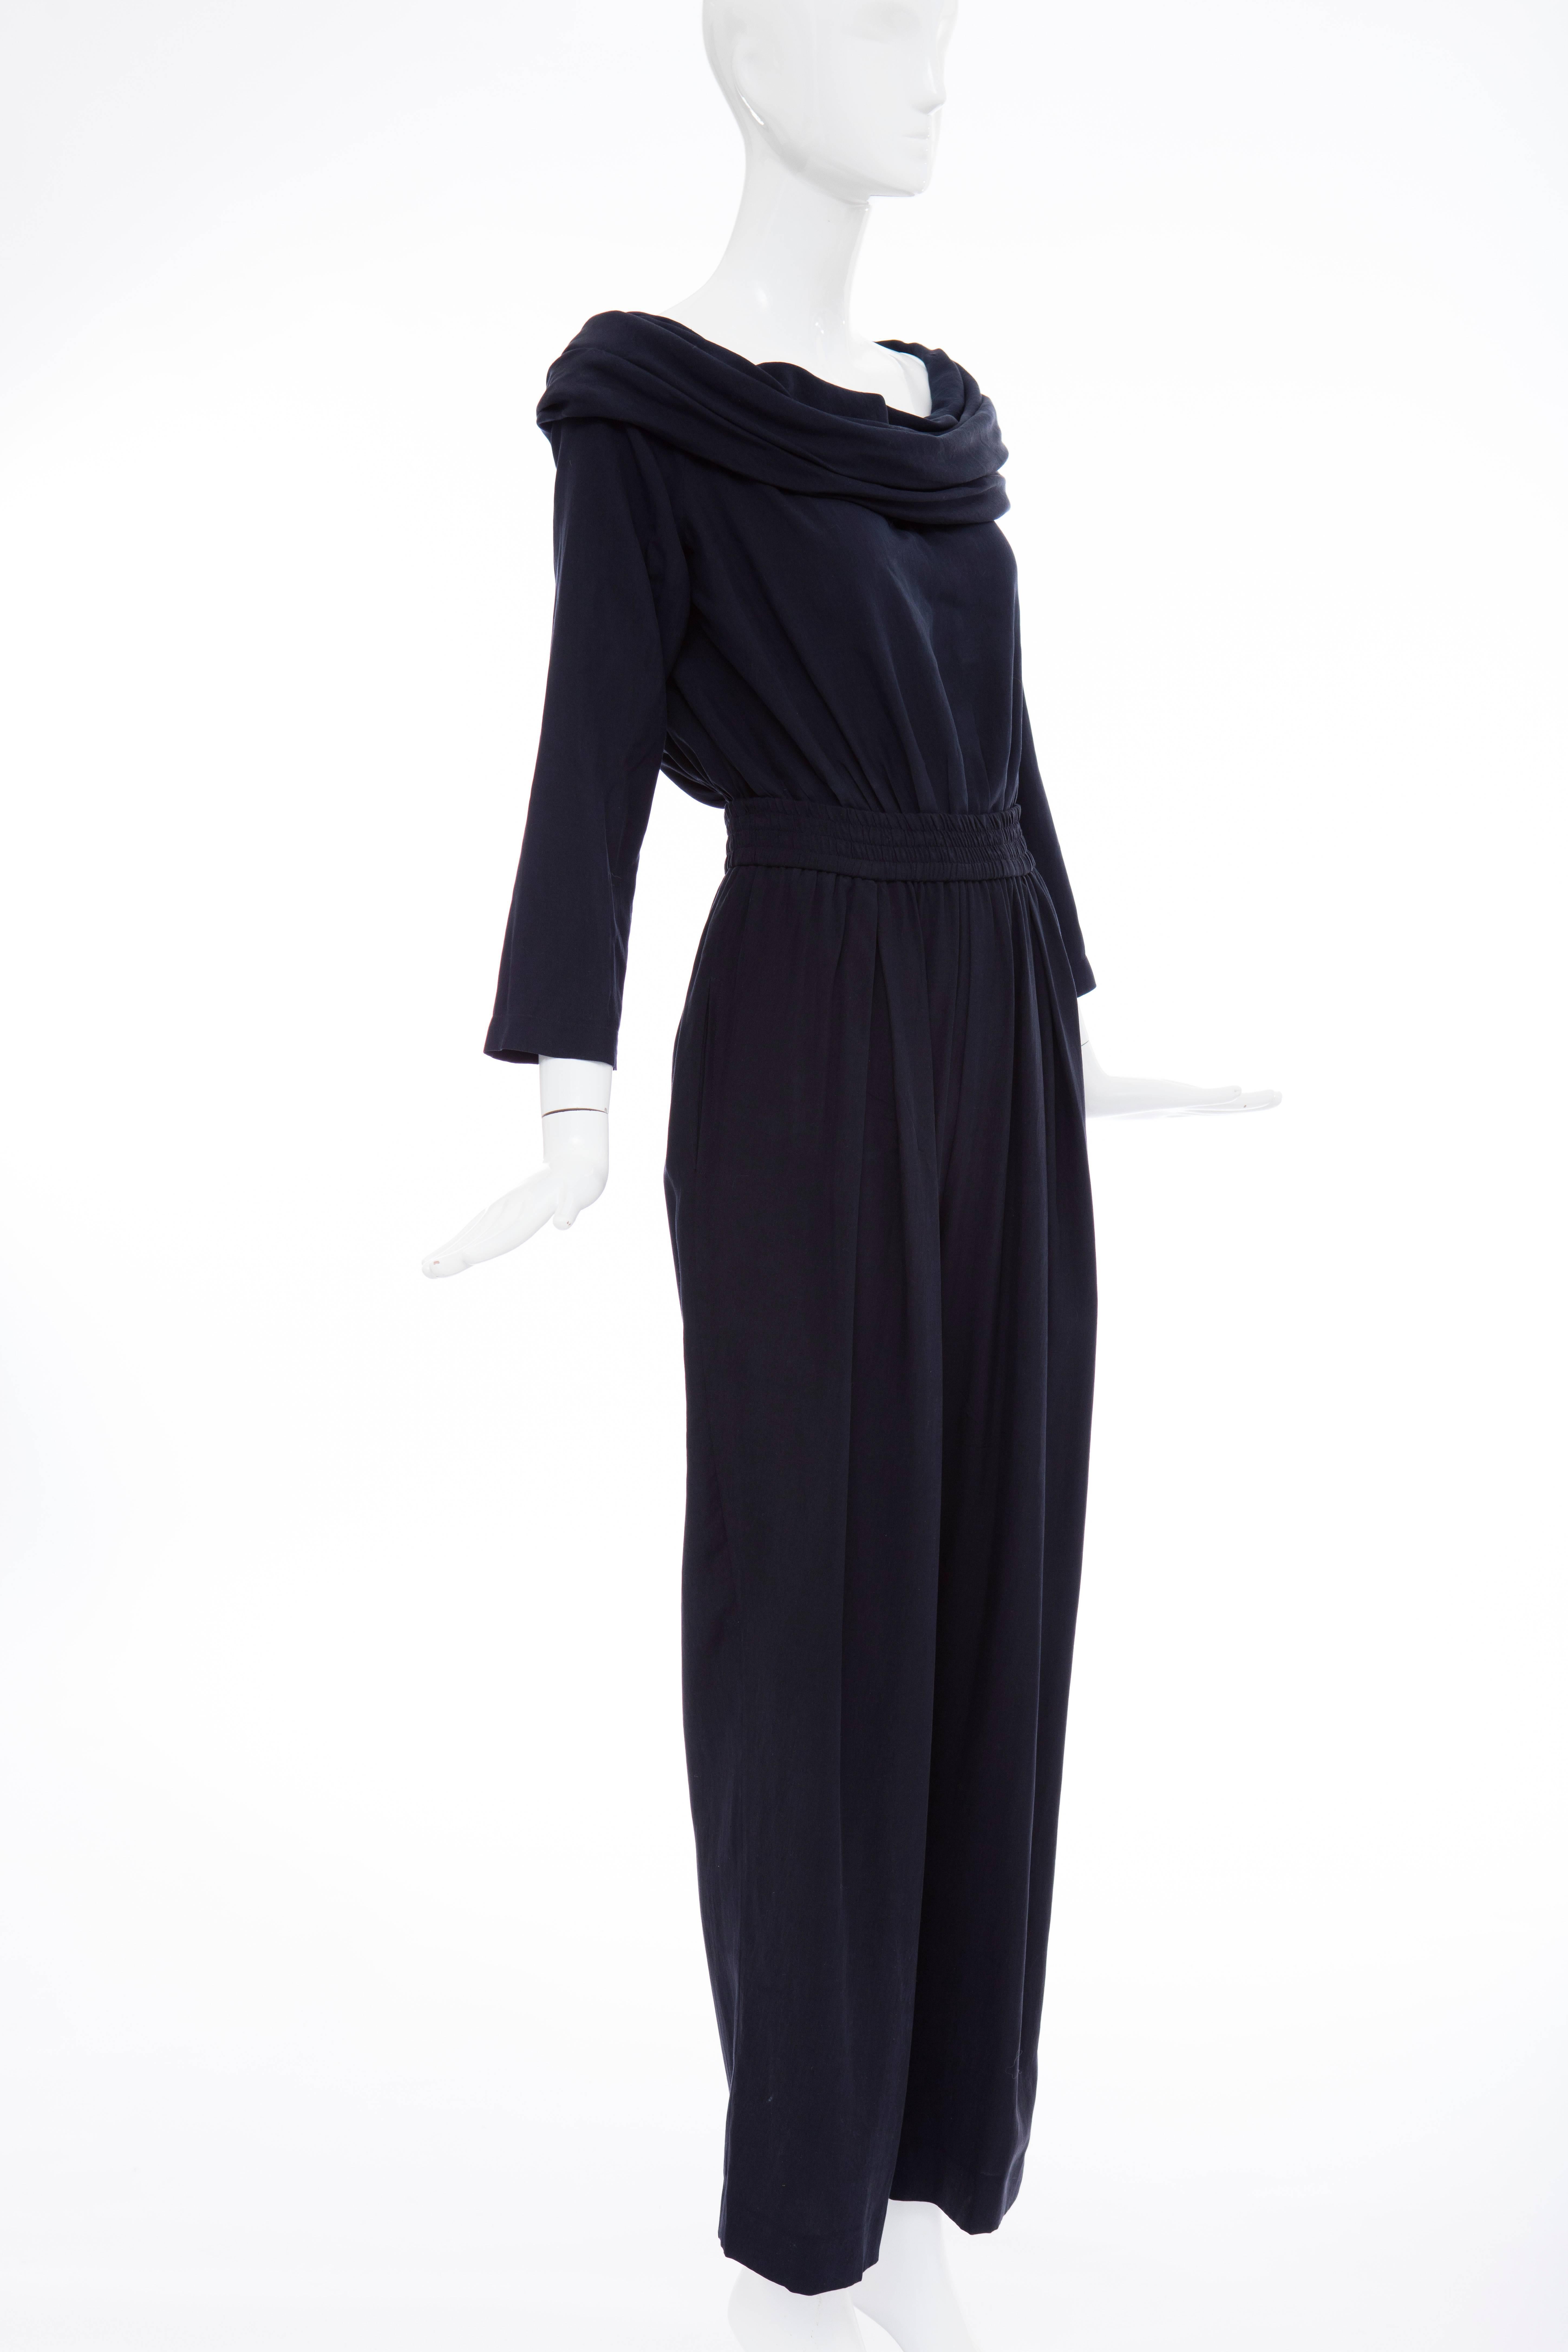 Donna Karan Silk Navy Blue Off The Shoulder Pant Suit, Circa 1980